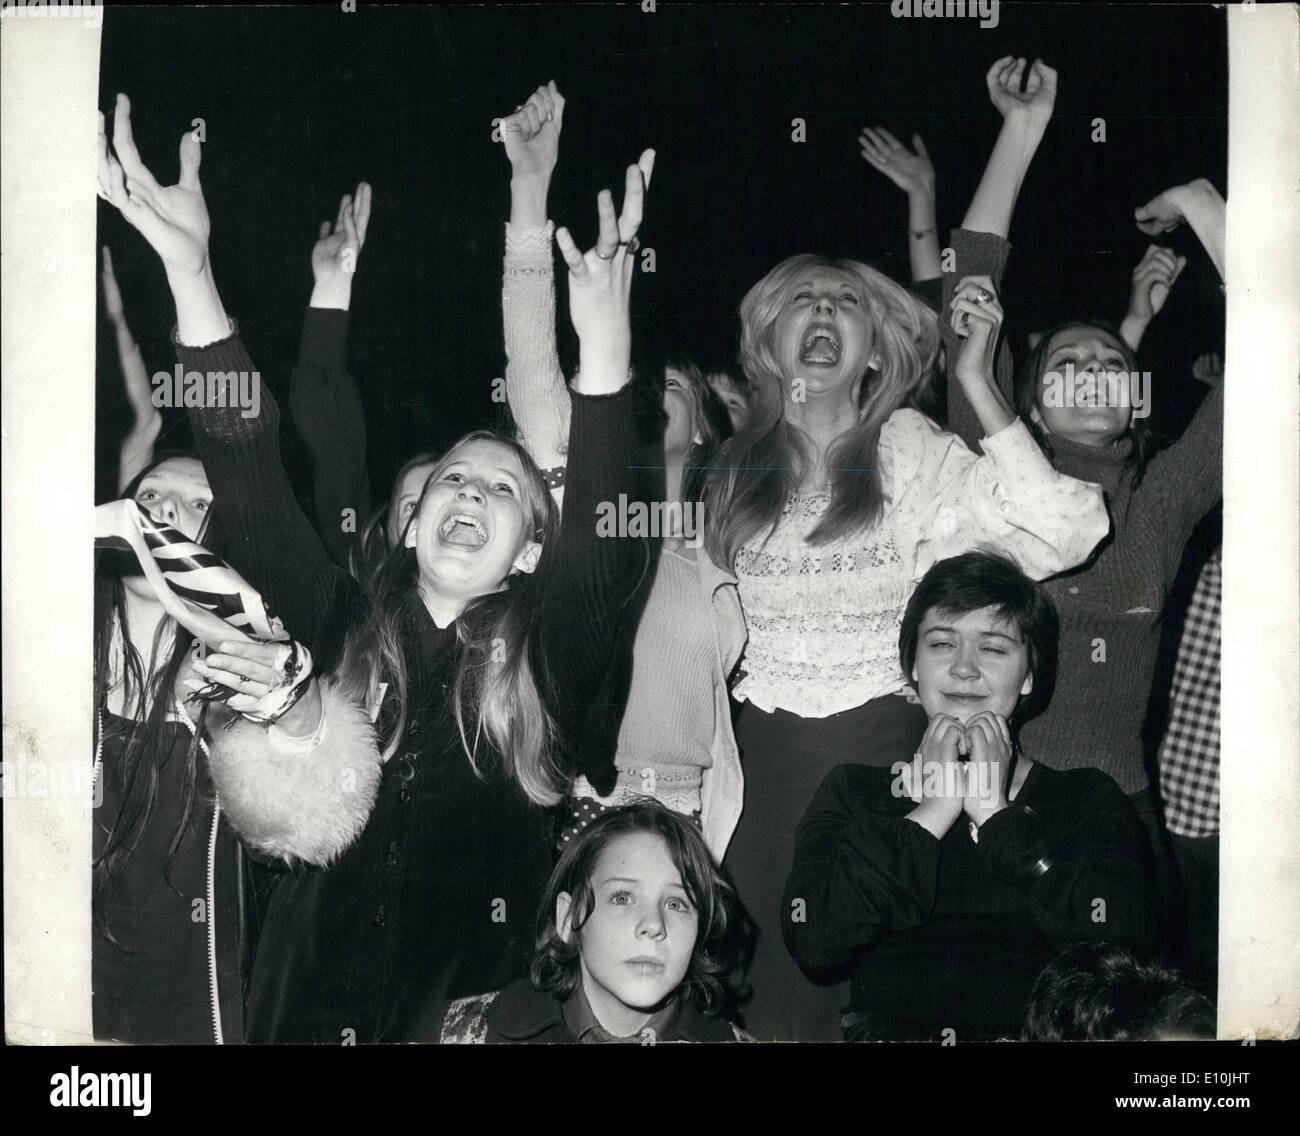 Marzo 03, 1973 - David Cassidy da concierto en Wembley: Miles de fans gritando, convirtió anoche el concierto dado por los 22 años de la estrella del pop estadounidense David Cassidy , en el Empire Pool, Wembley. La foto muestra los gritos de los fans ilustra a la última noche de concierto en el Empire Pool, Wembly. Foto de stock